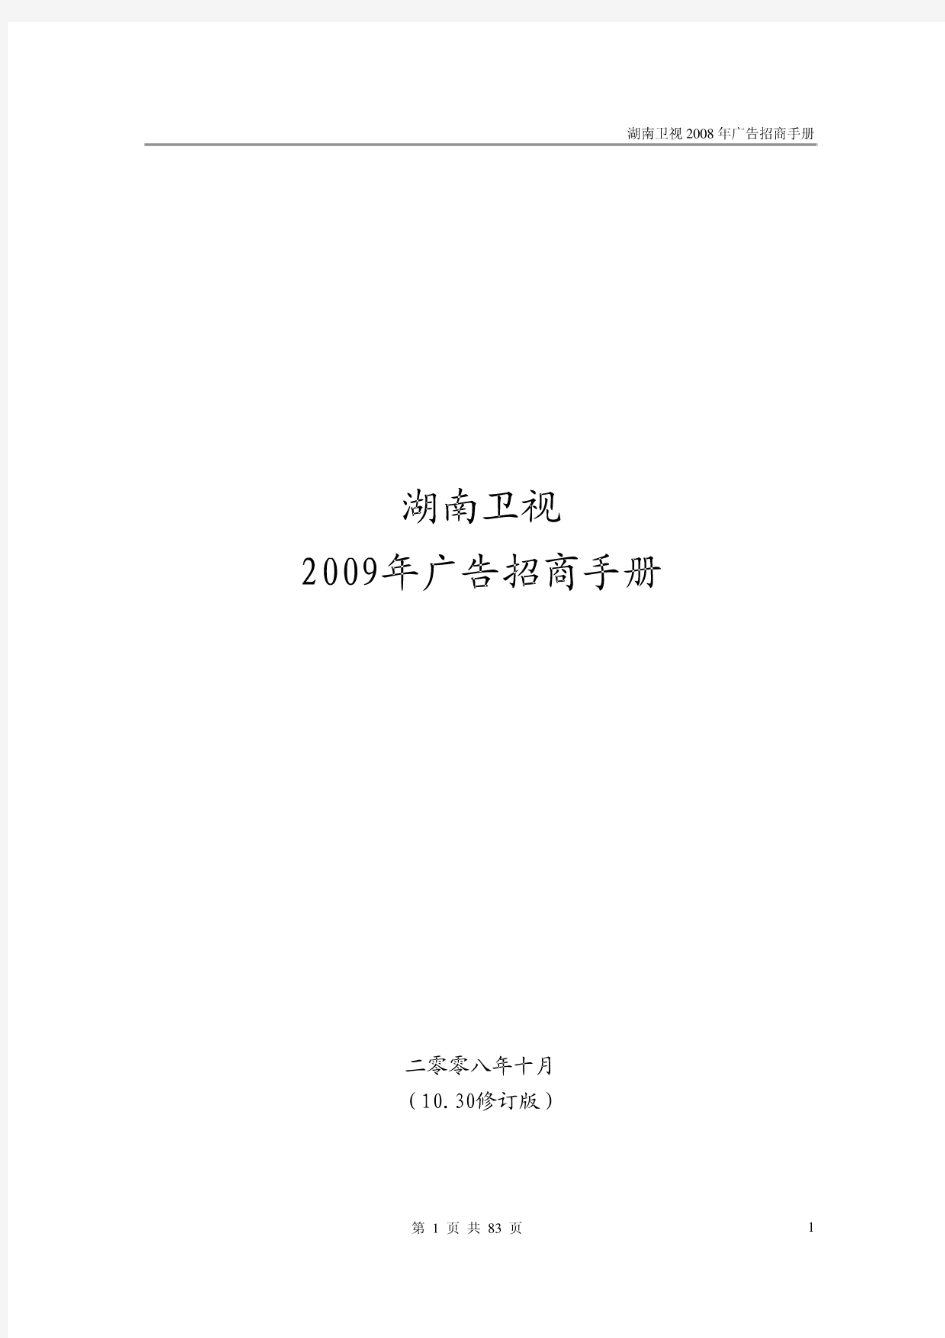 湖南卫视2009年广告招商手册